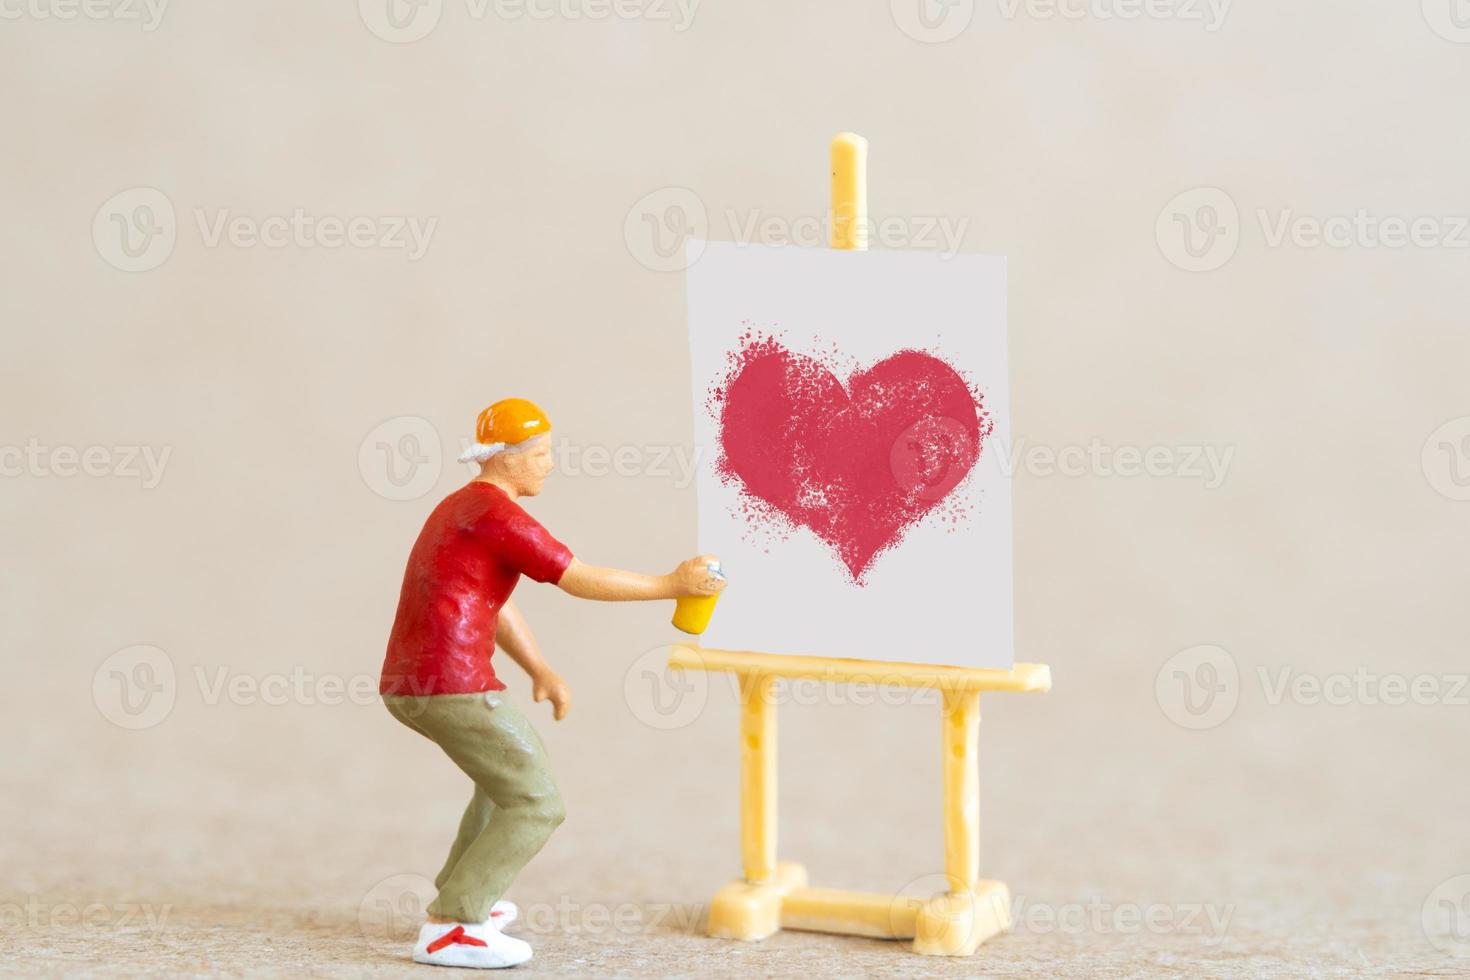 artista segurando dispensador e pulverizando com formas de coração vermelho, conceito de dia dos namorados foto